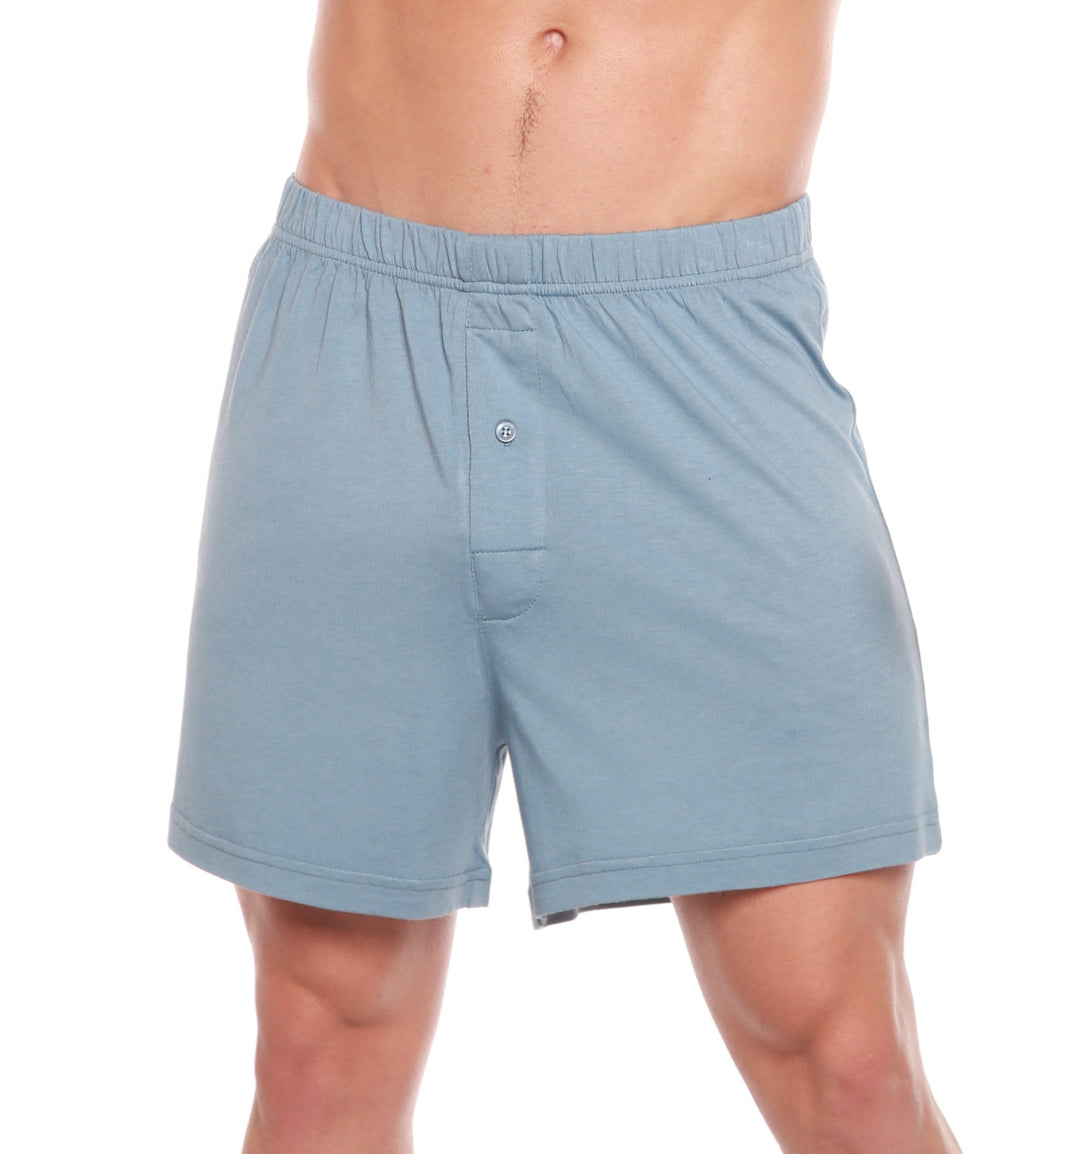 Linen Sleep Shorts, Organic Men's Underwear, Blue Cotton Boxers Briefs, Pajama  Shorts, Valentine's Day Gift 